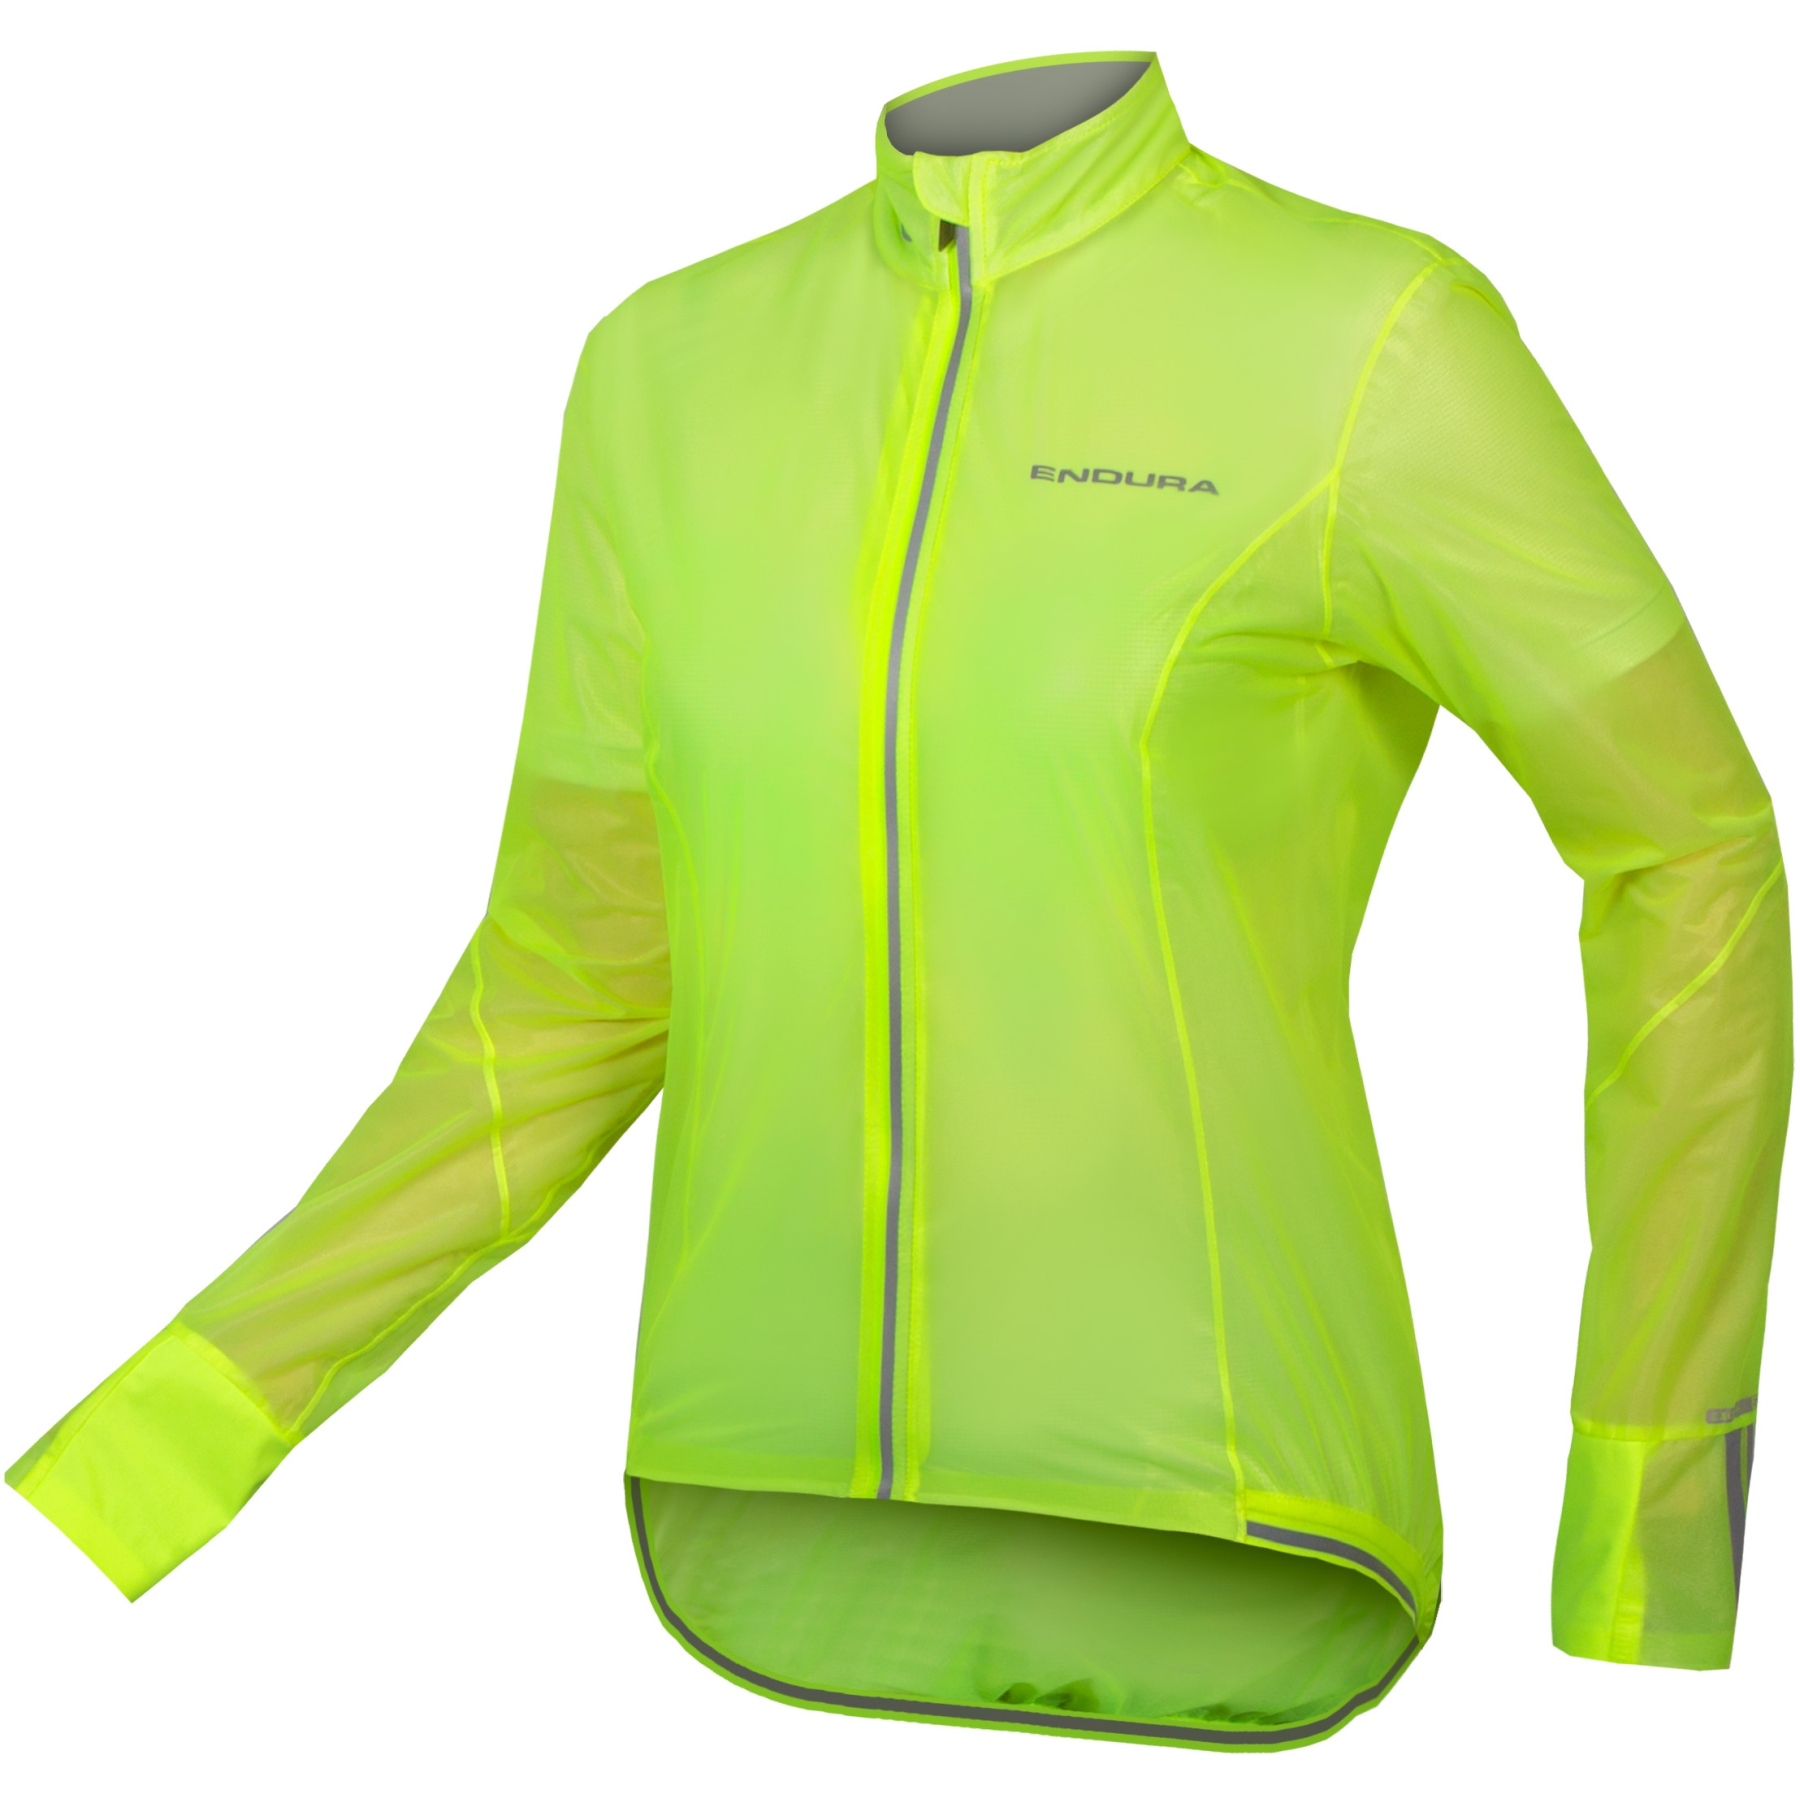 Produktbild von Endura FS260-Pro Adrenaline Race Cape II Jacke Damen - neon-gelb